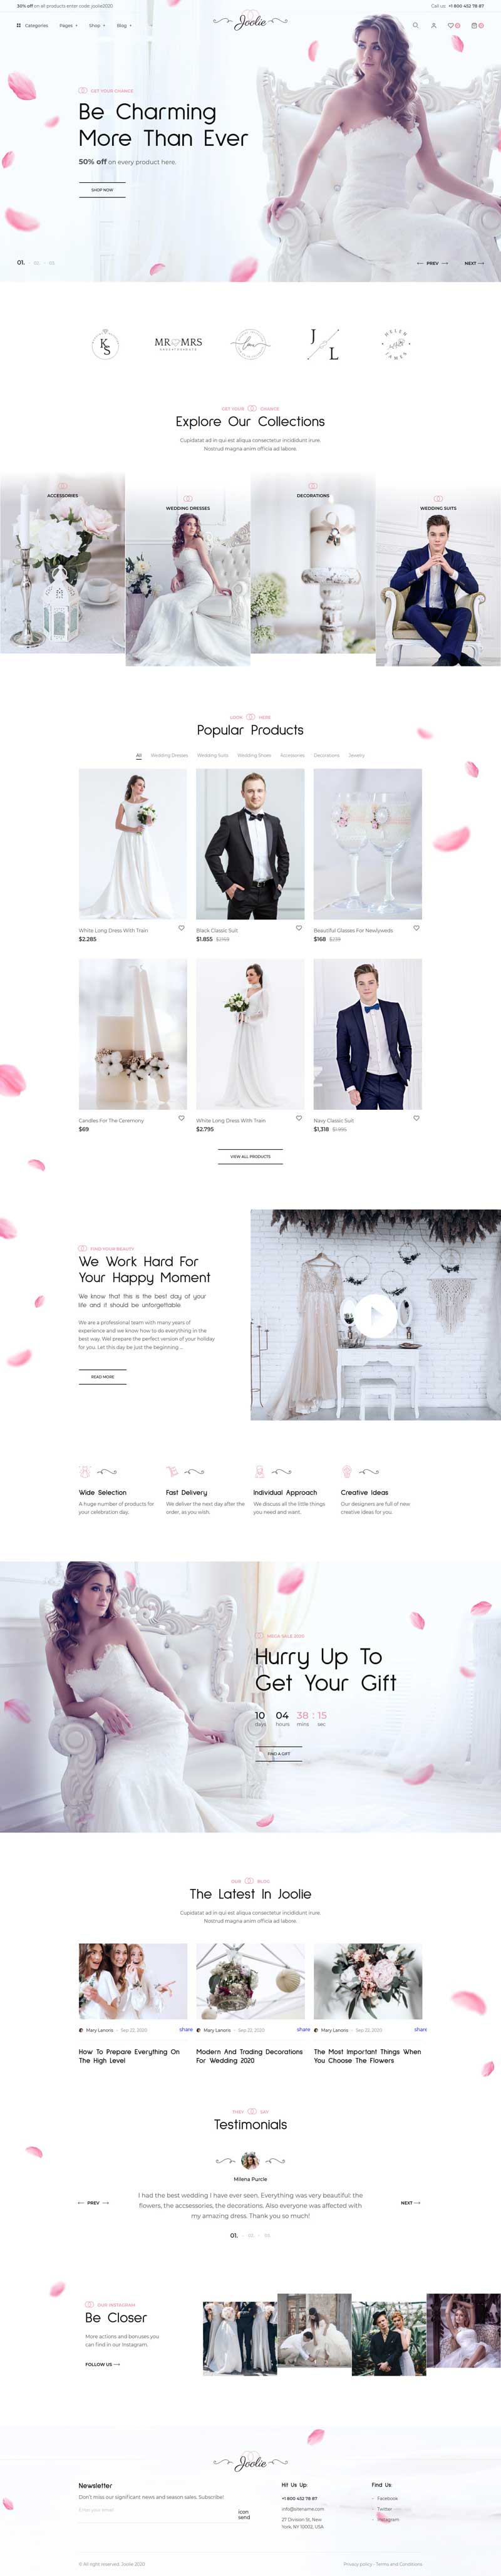 婚礼摄影定制商店网站HTML模板